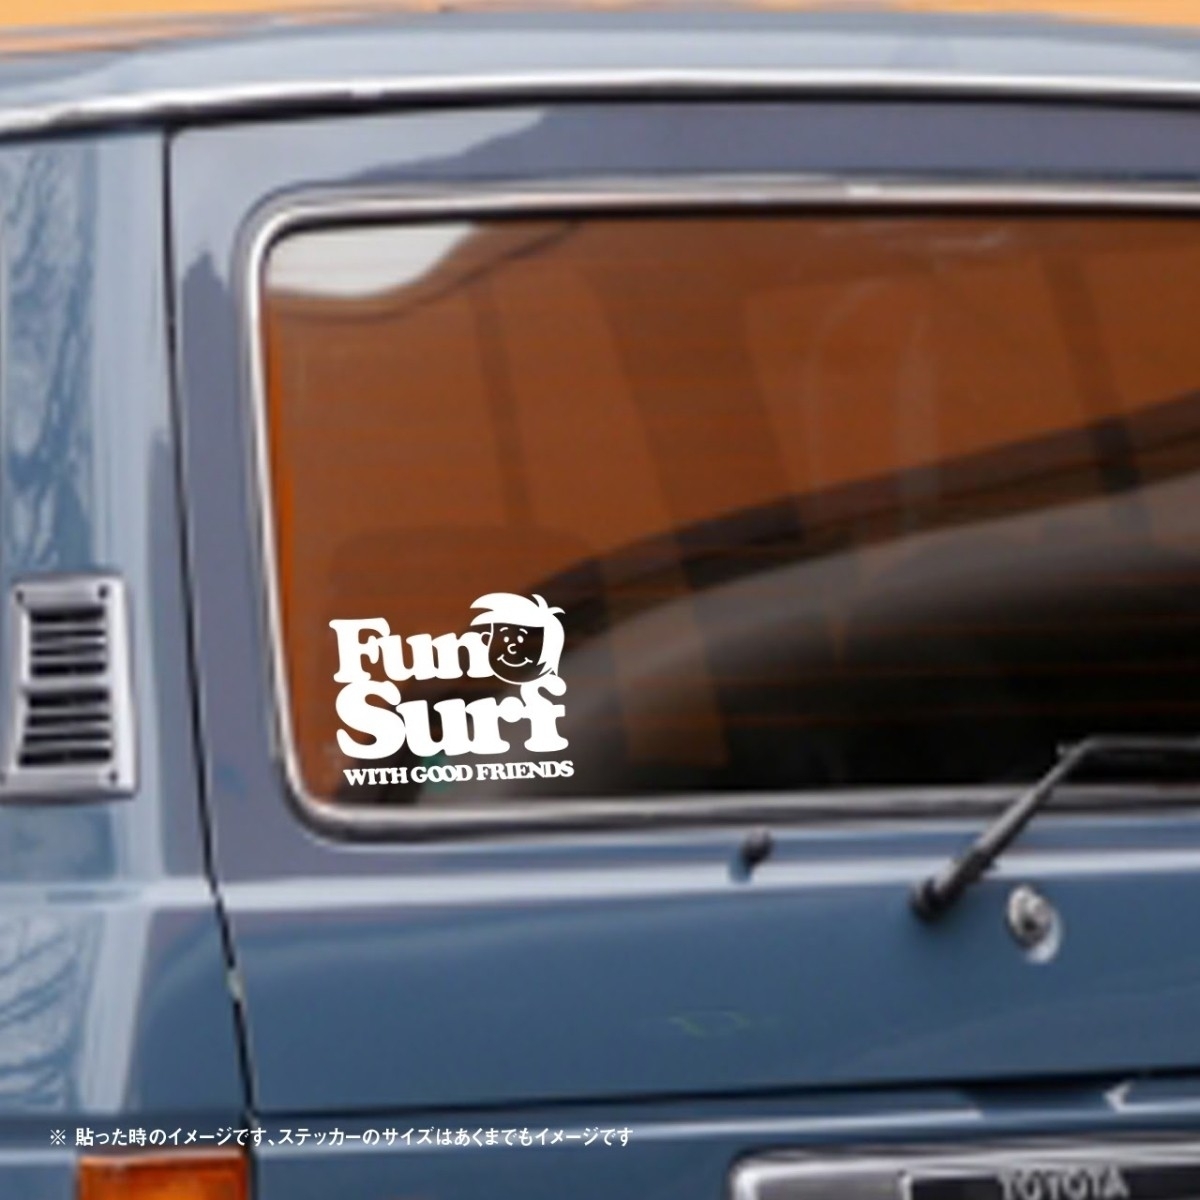 [ surfing te car ] fan Surf 